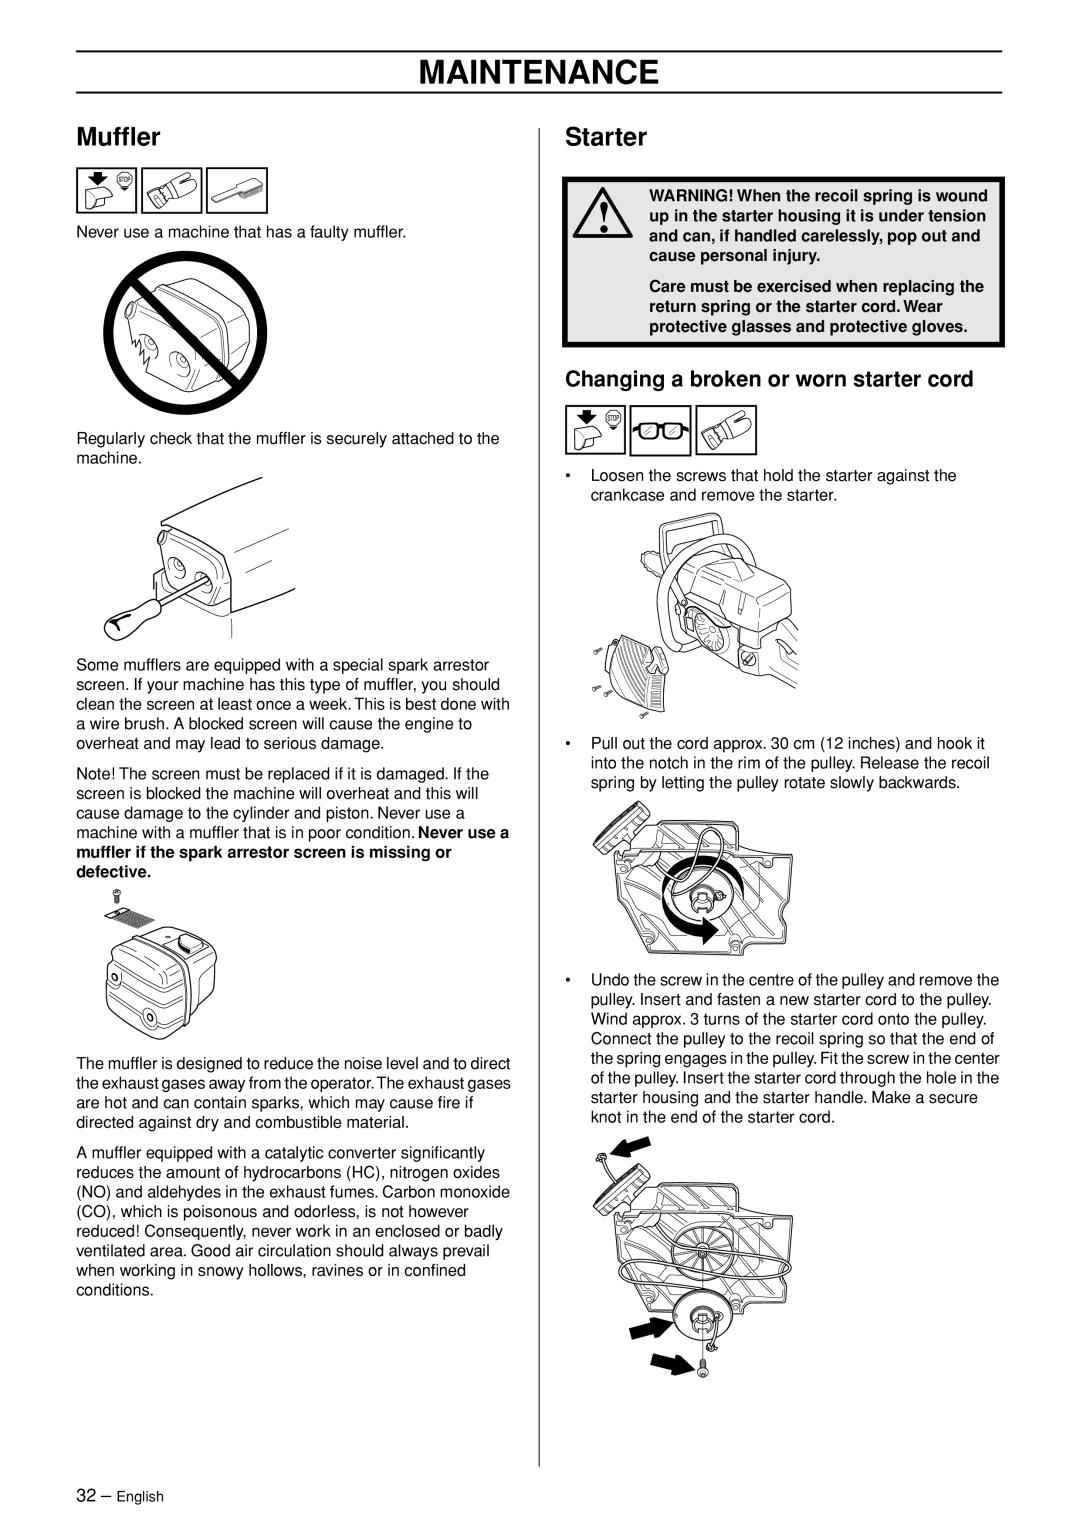 Jonsered CS 2153 manual Mufﬂer, Starter, Changing a broken or worn starter cord, Maintenance 